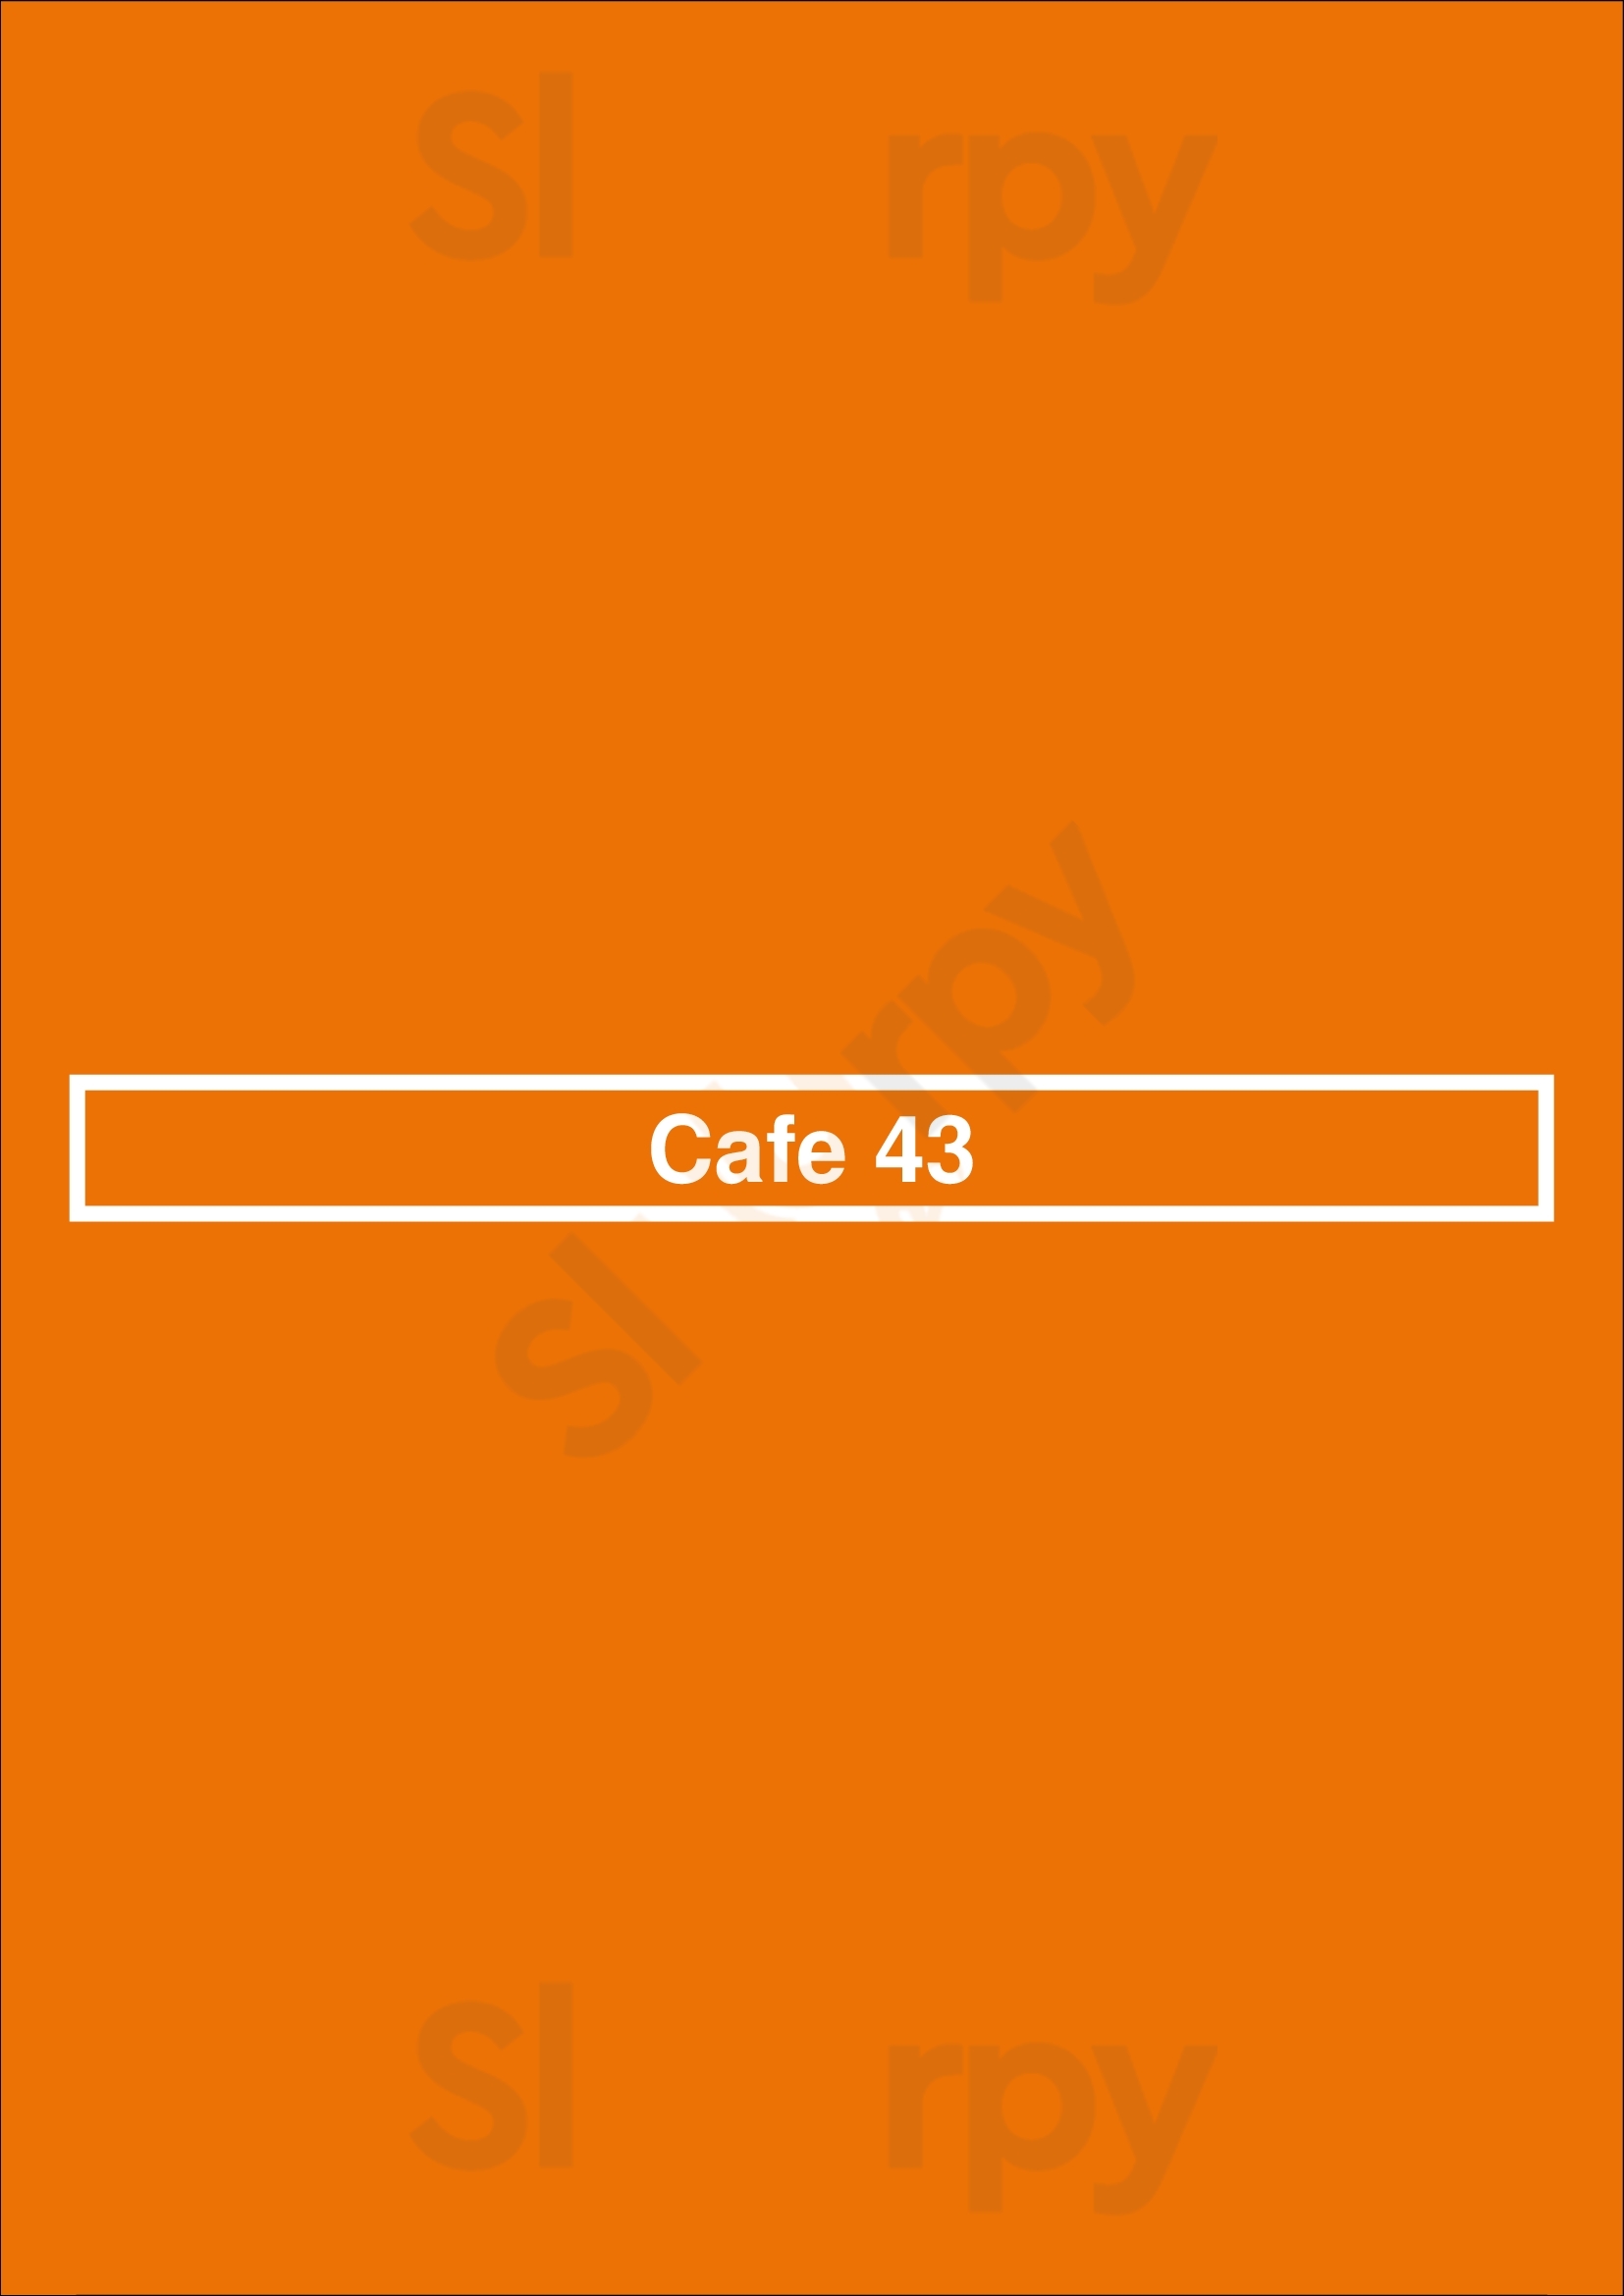 Cafe 43 Dallas Menu - 1